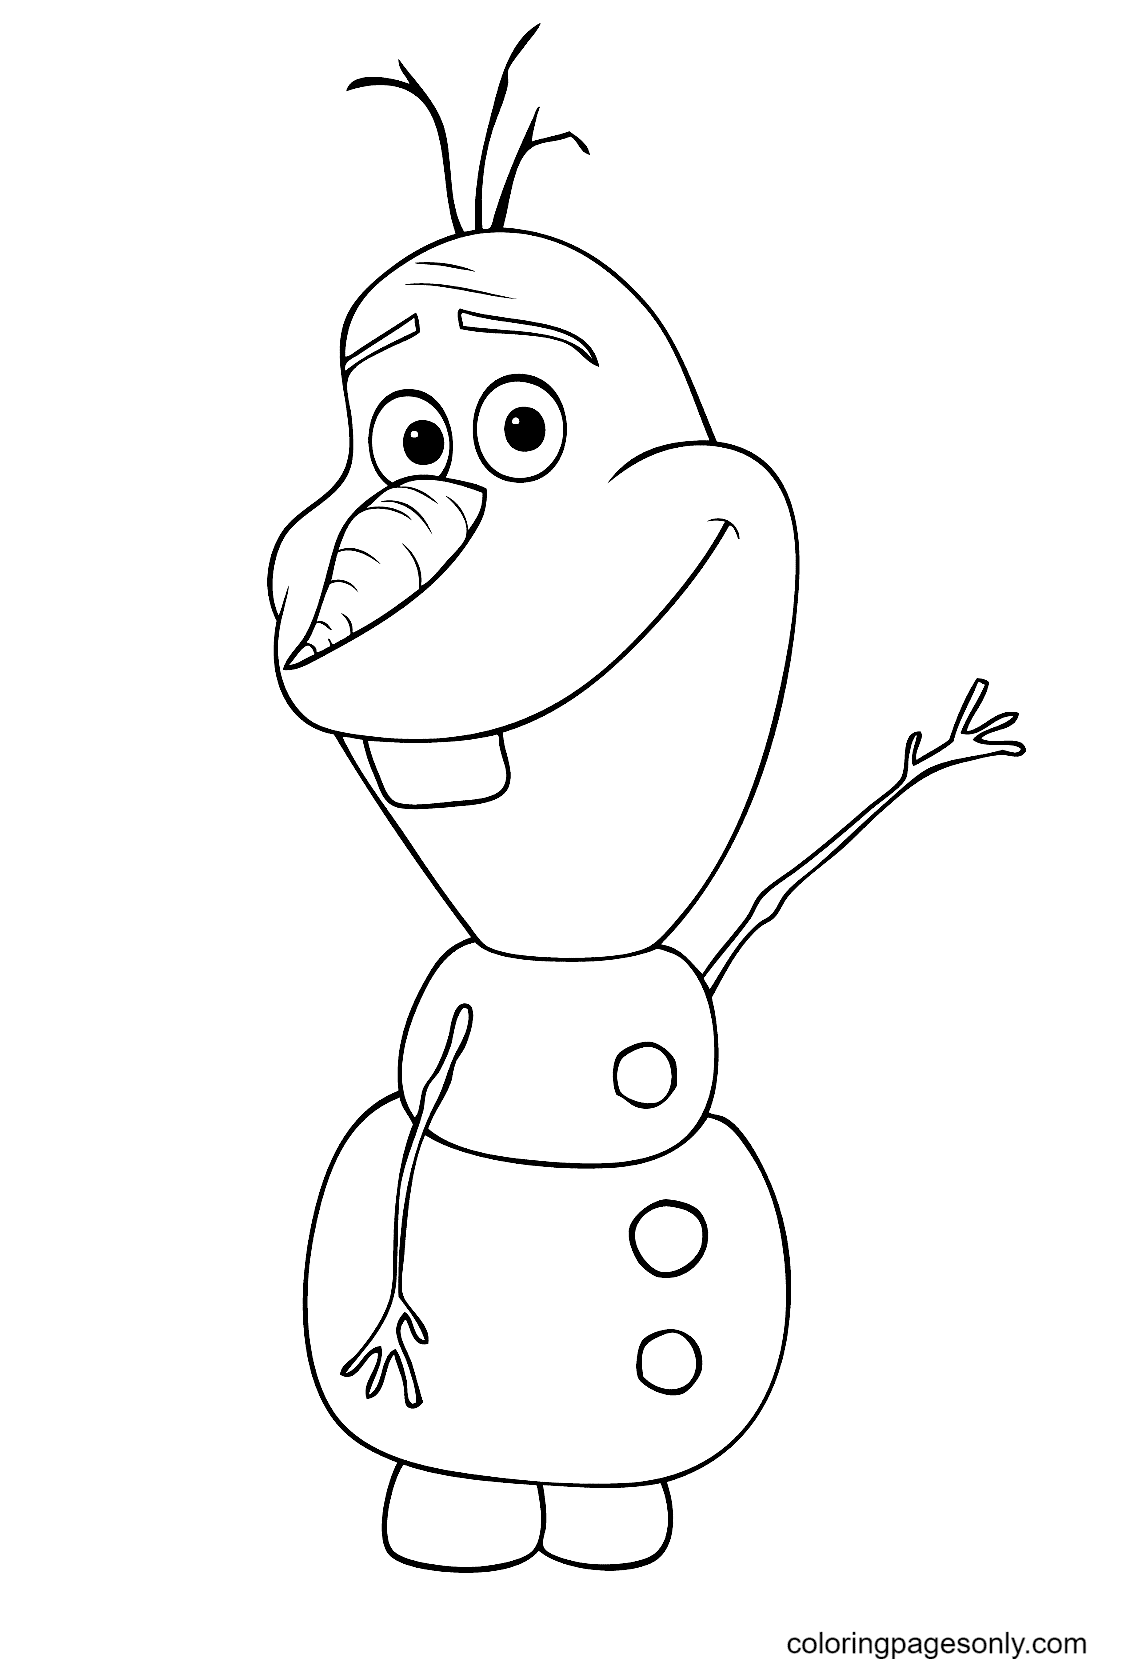 Il simpatico Olaf di Olaf